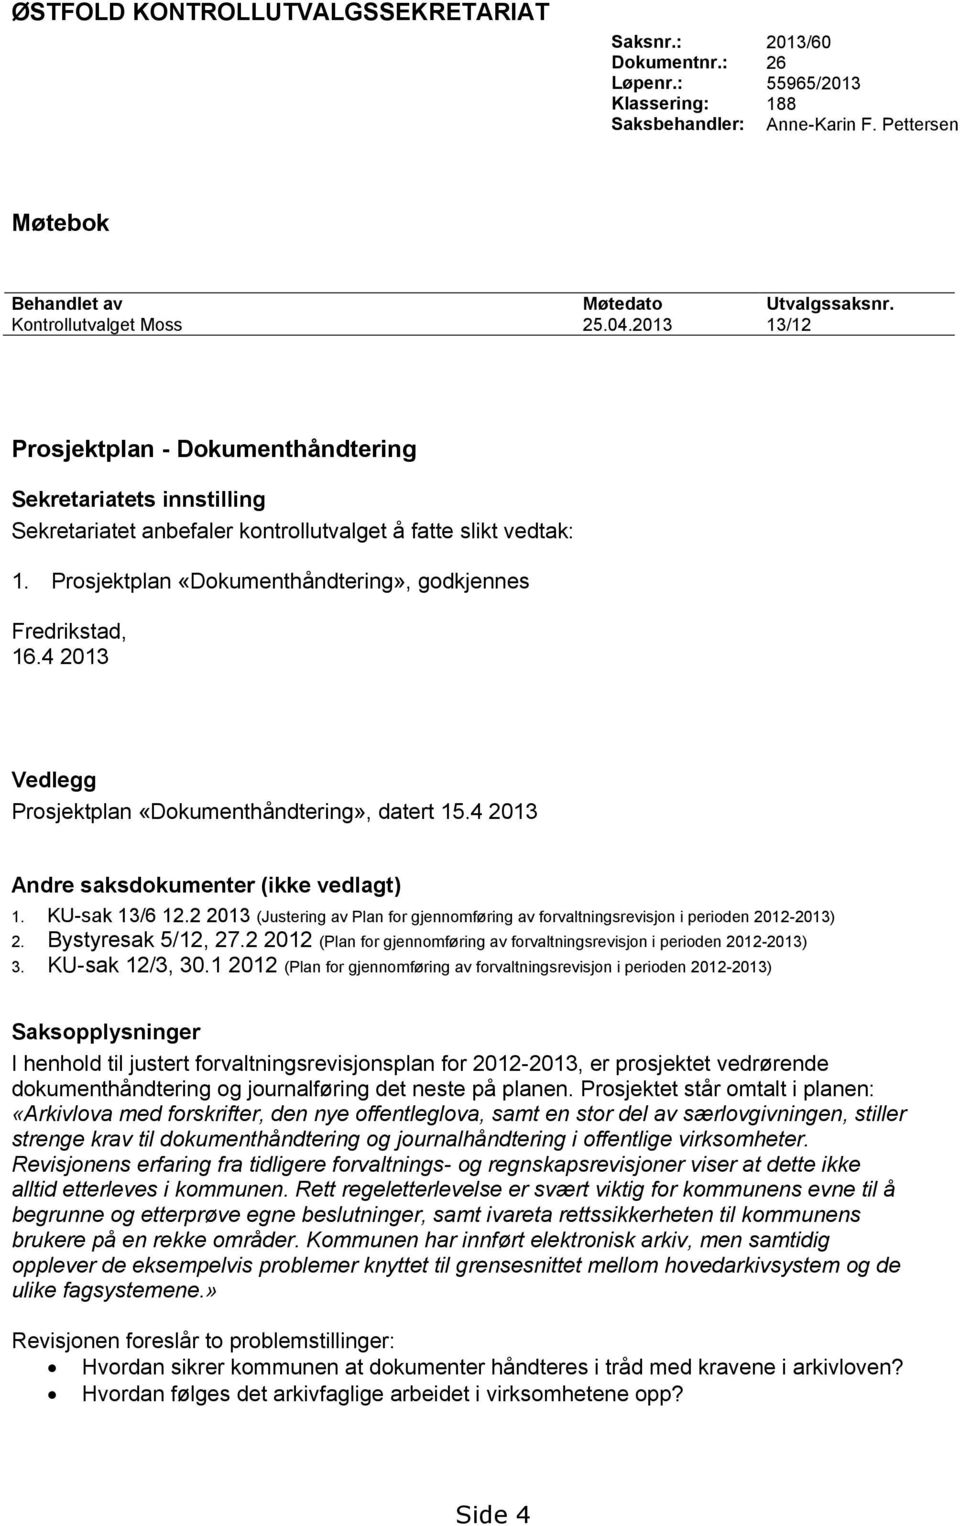 Prosjektplan «Dokumenthåndtering», godkjennes Fredrikstad, 16.4 2013 Vedlegg Prosjektplan «Dokumenthåndtering», datert 15.4 2013 Andre saksdokumenter (ikke vedlagt) 1. KU-sak 13/6 12.